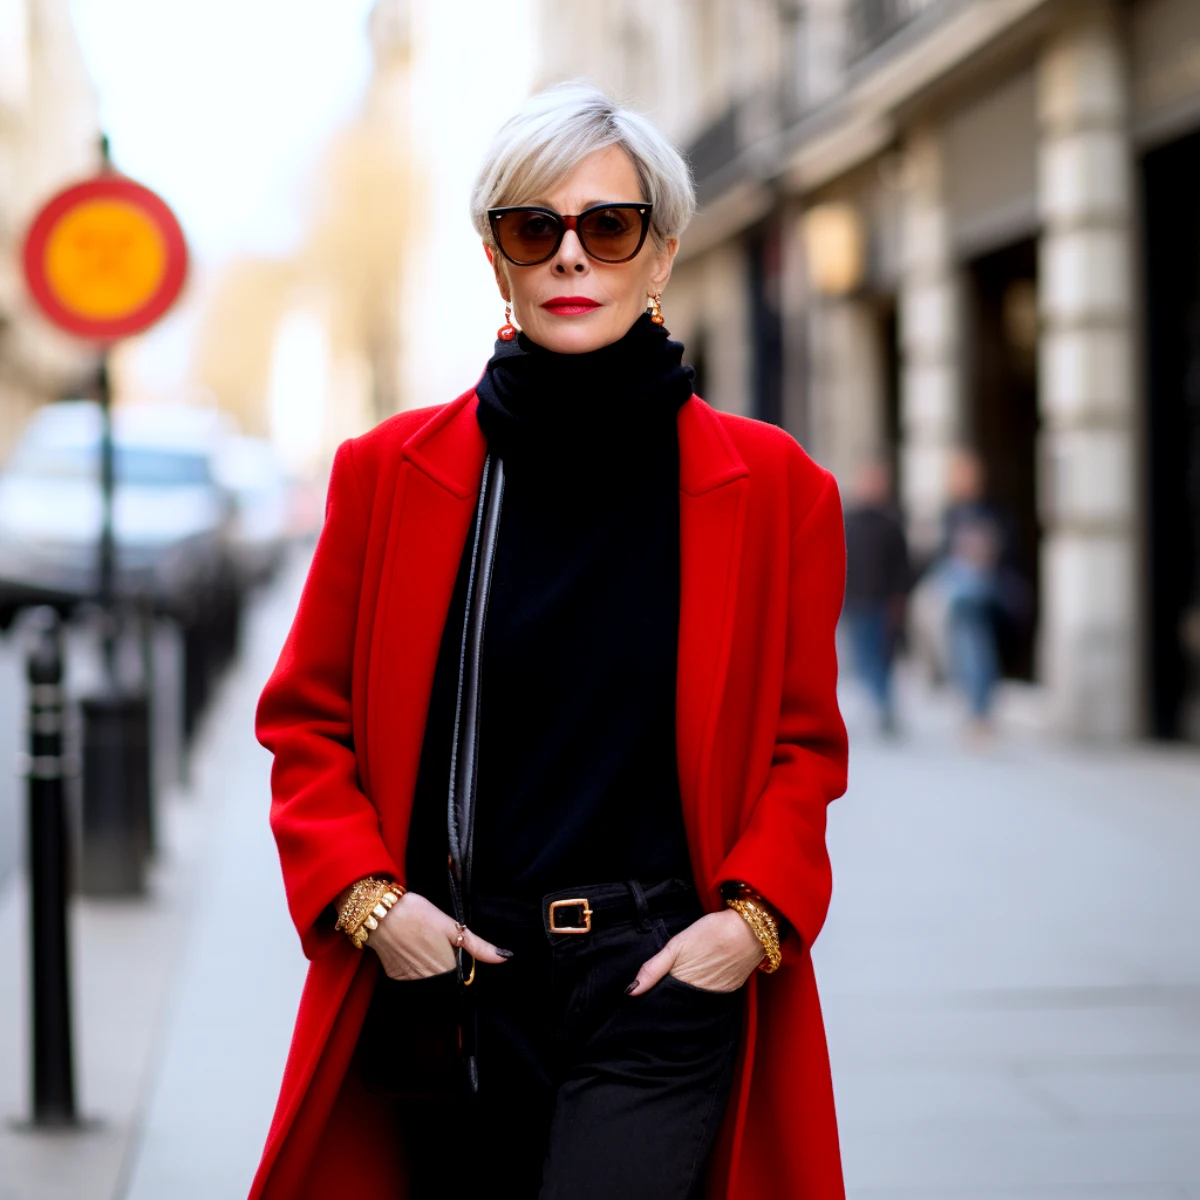 femme 60 ans tenue moderne veste rouhe jean ceinture lunettes de soleil